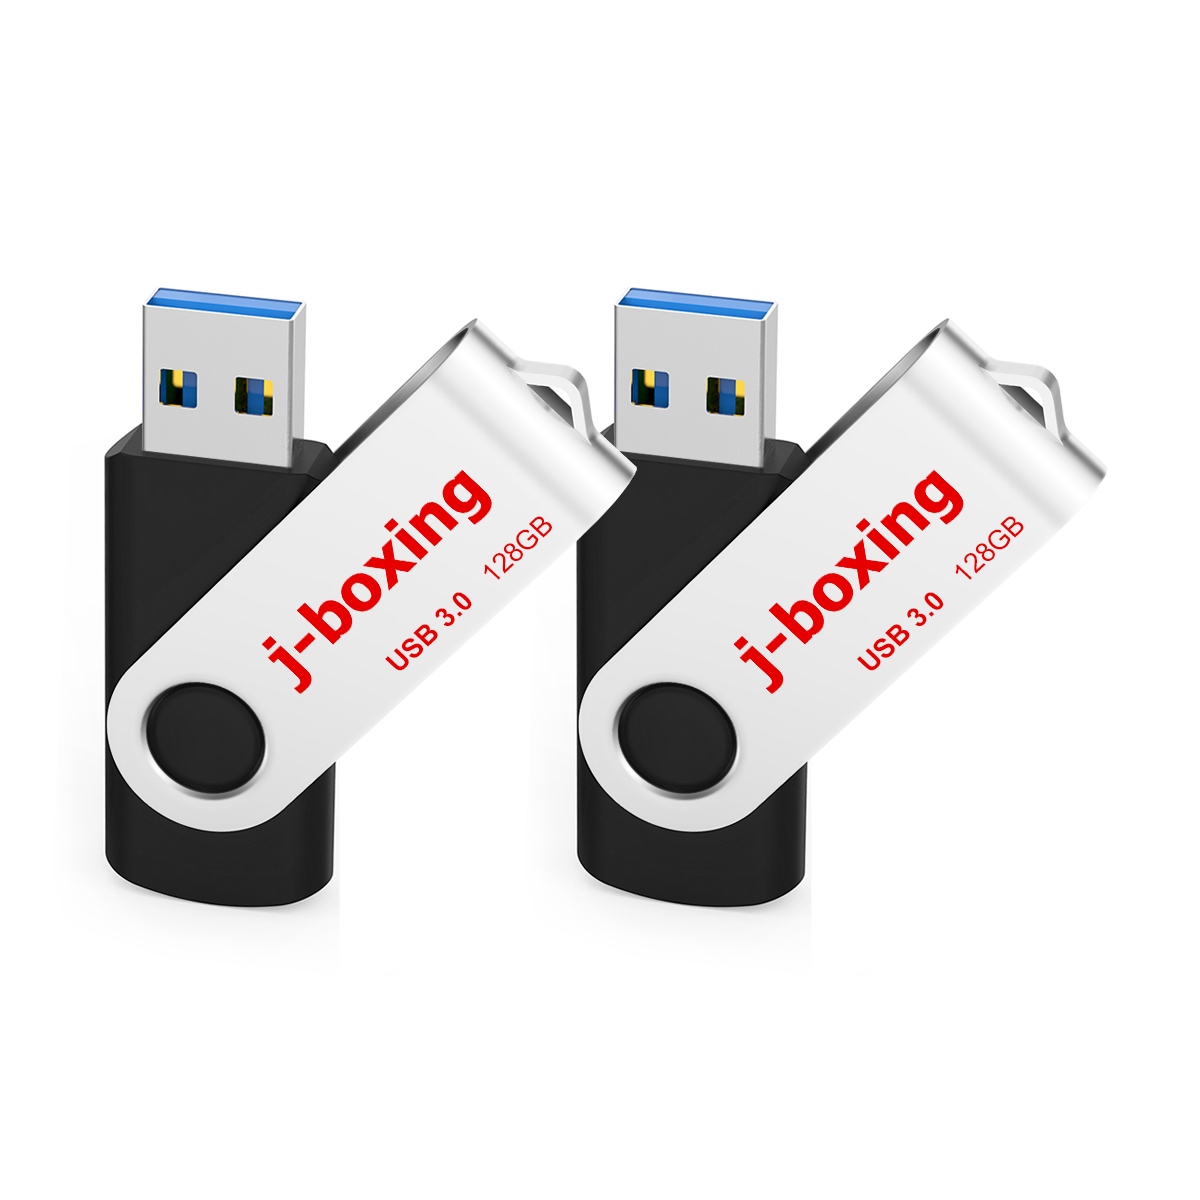 2 Paket 128GB USB Flash Drives 3.0 Başparmak Bellek Çubuğu Bilgisayar Masaüstü Dizüstü Bilgisayar Veri Depolama için 128 GB Yüksek Hız